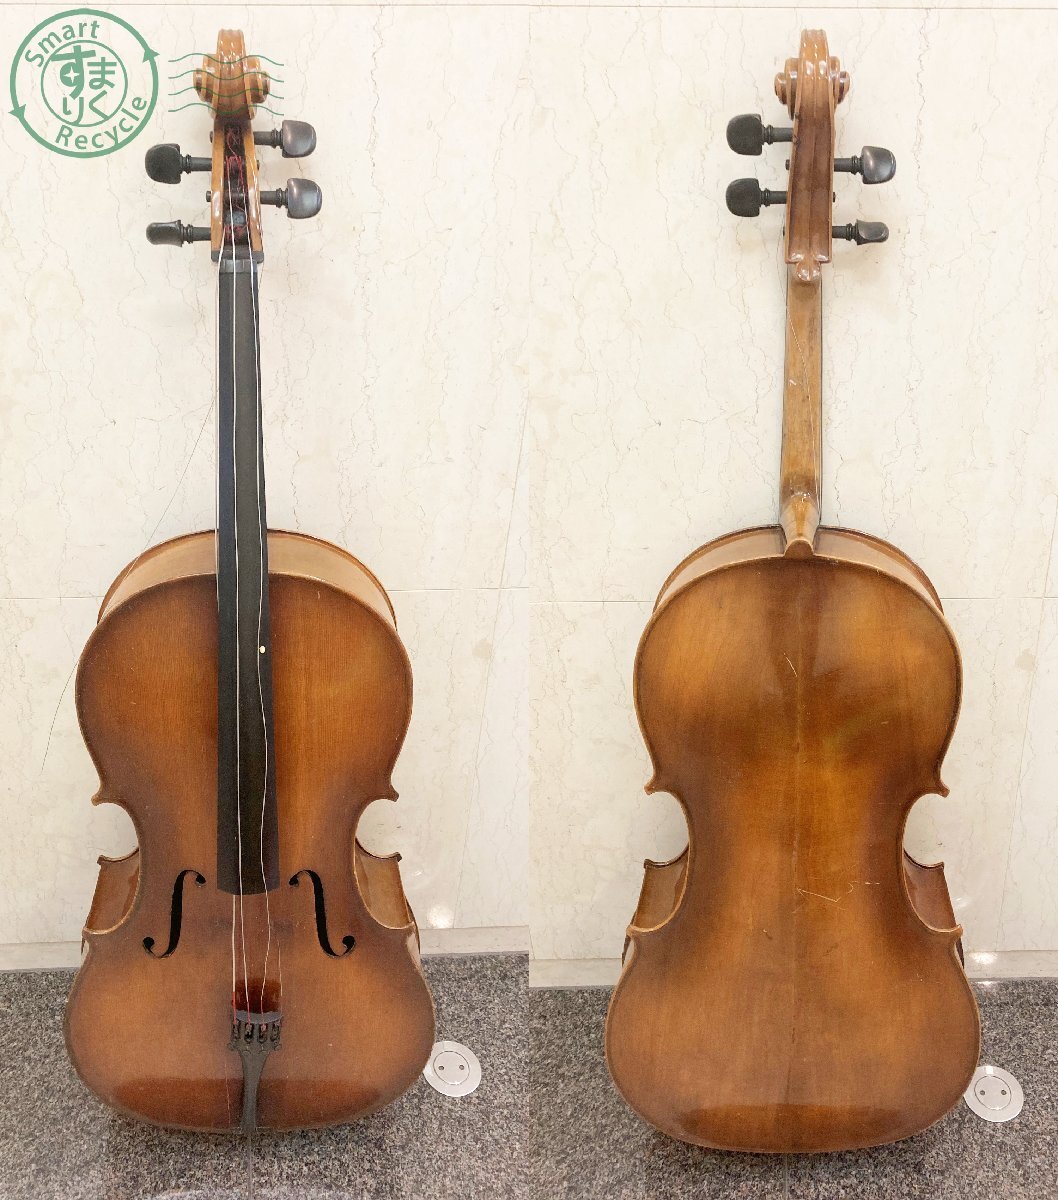 2403604234 ♭[ прямой самовывоз ограничение ] виолончель suzuki violin Co Ltd NAGOYA 19 size 4/4 музыкальные инструменты струнные инструменты мягкий чехол имеется б/у текущее состояние товар 